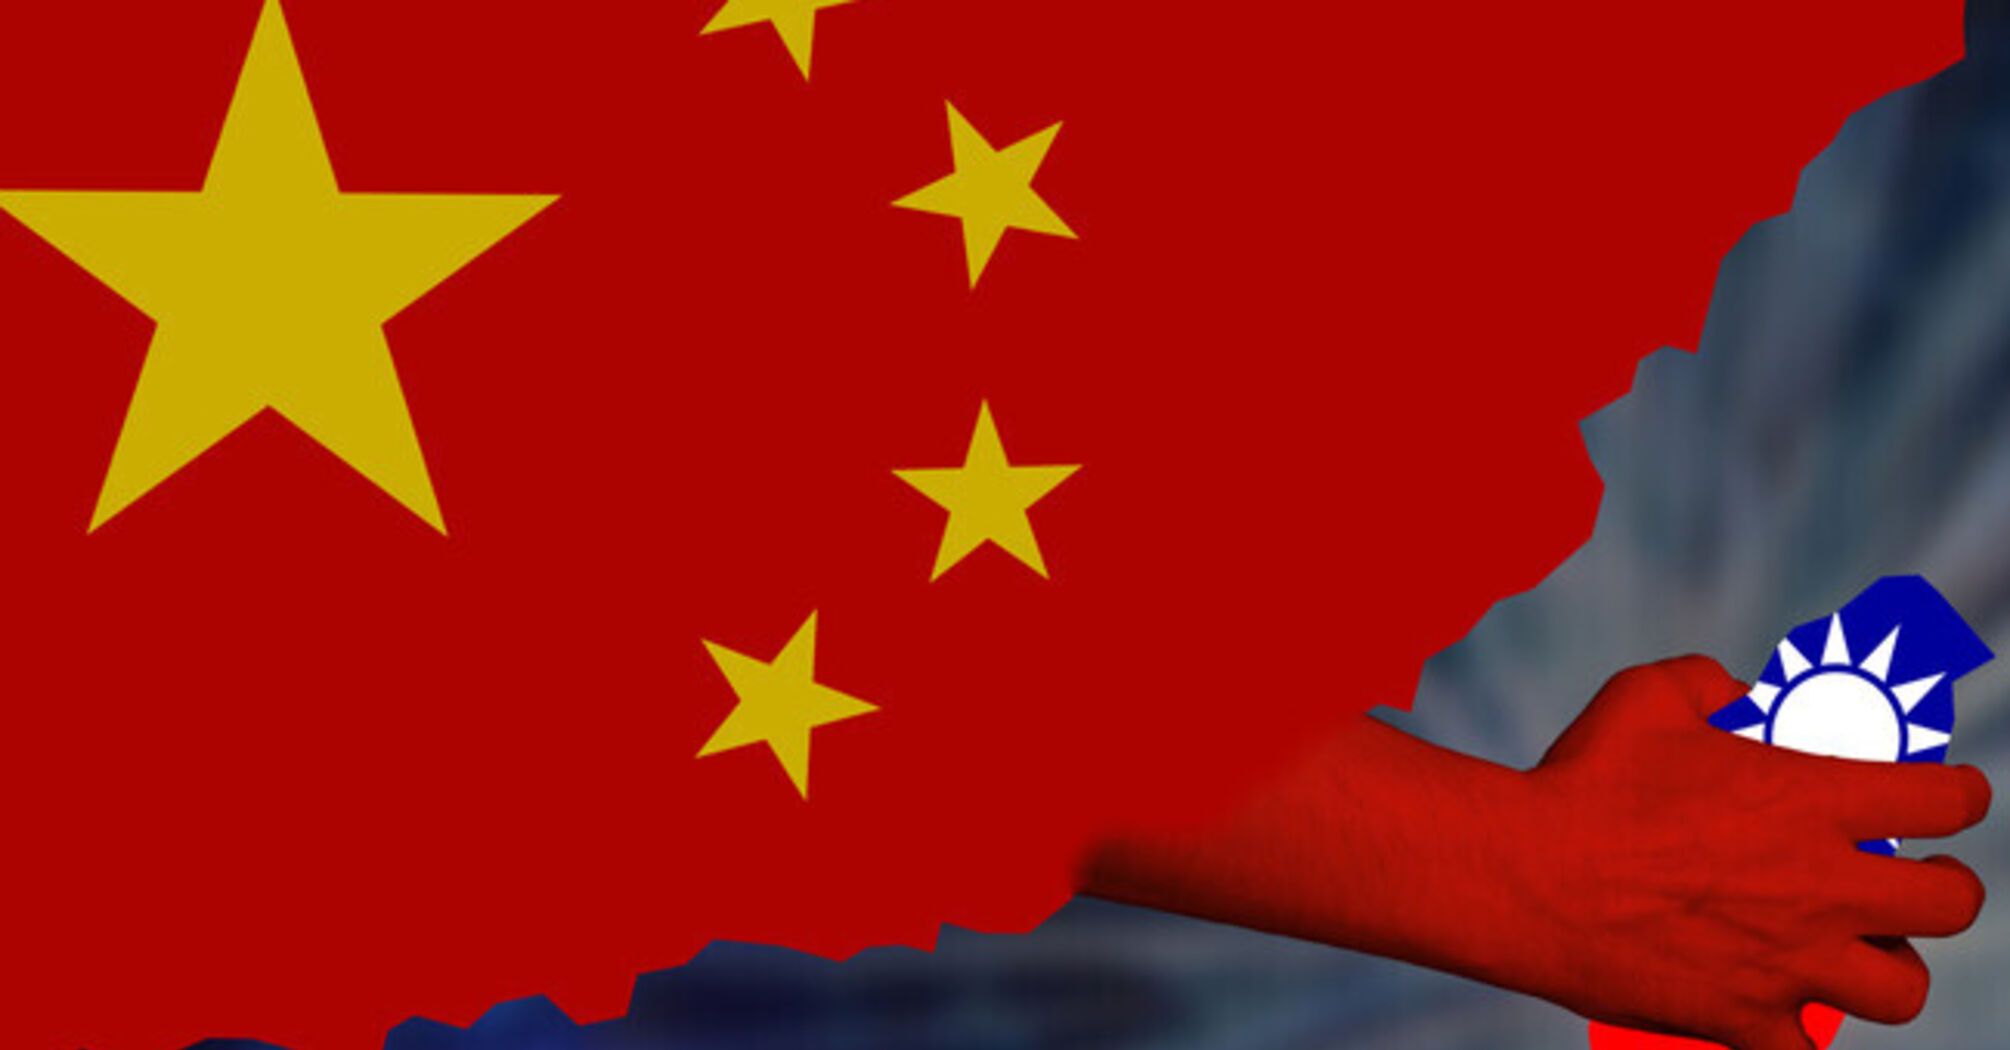 Скільки часу потрібно Китаю для повної блокади Тайваню?